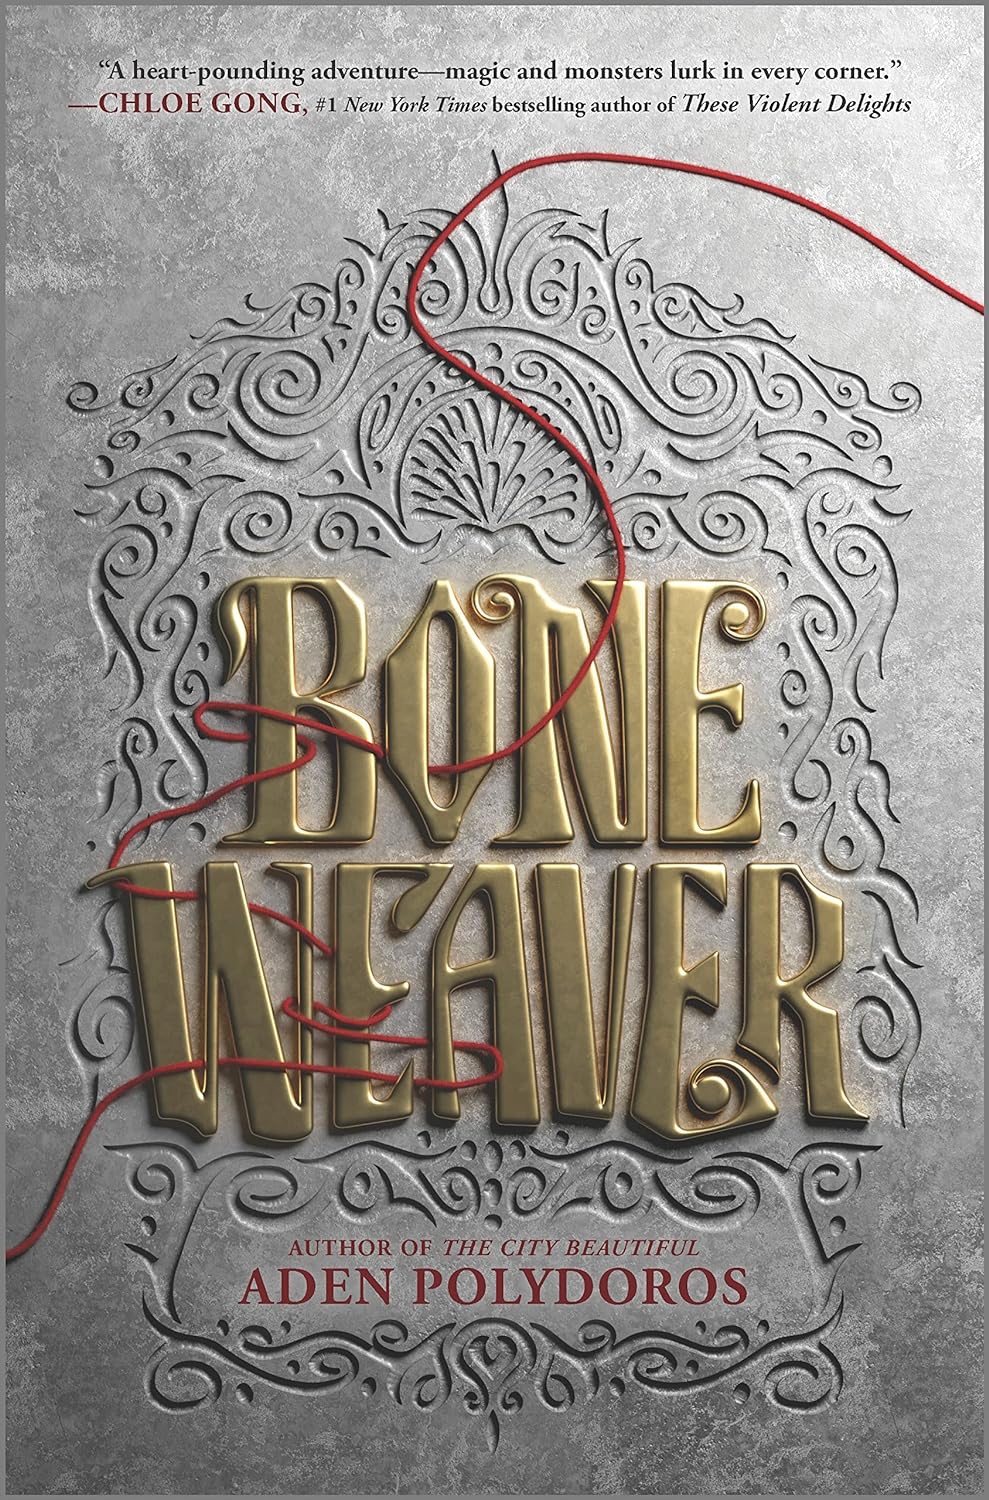 Cover for “Bone Weaver”